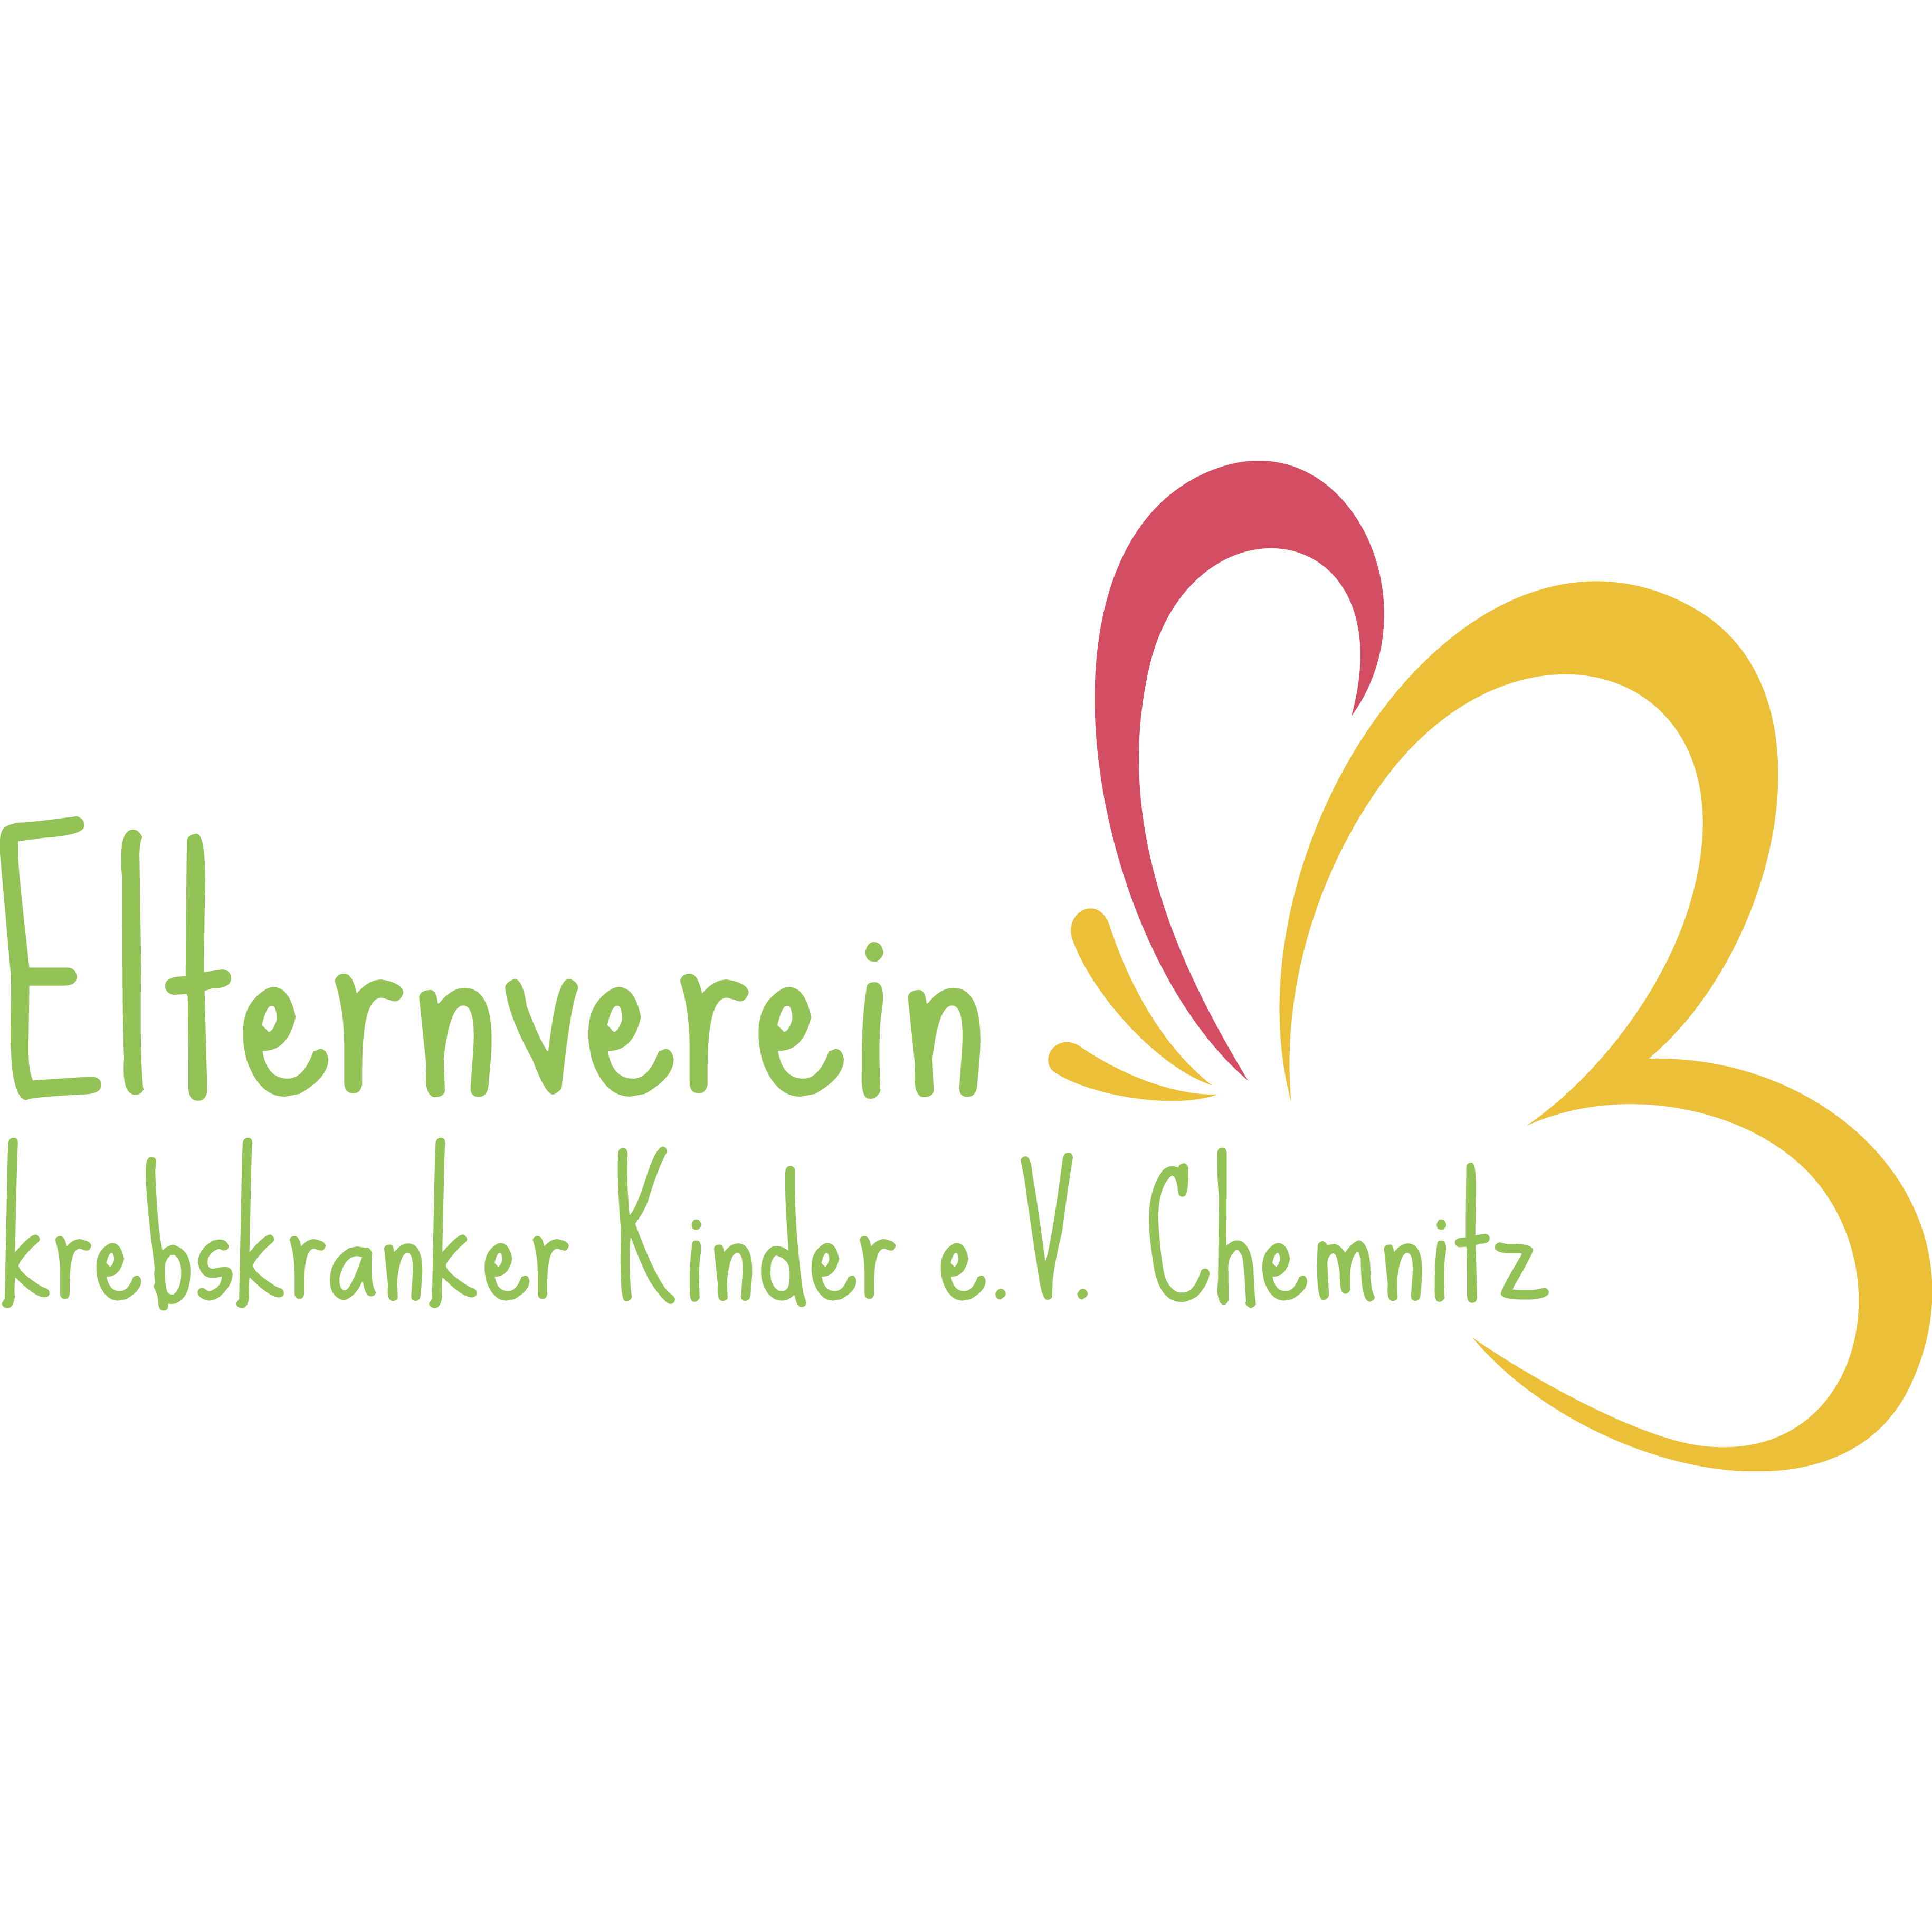 www.ekk-chemnitz.de